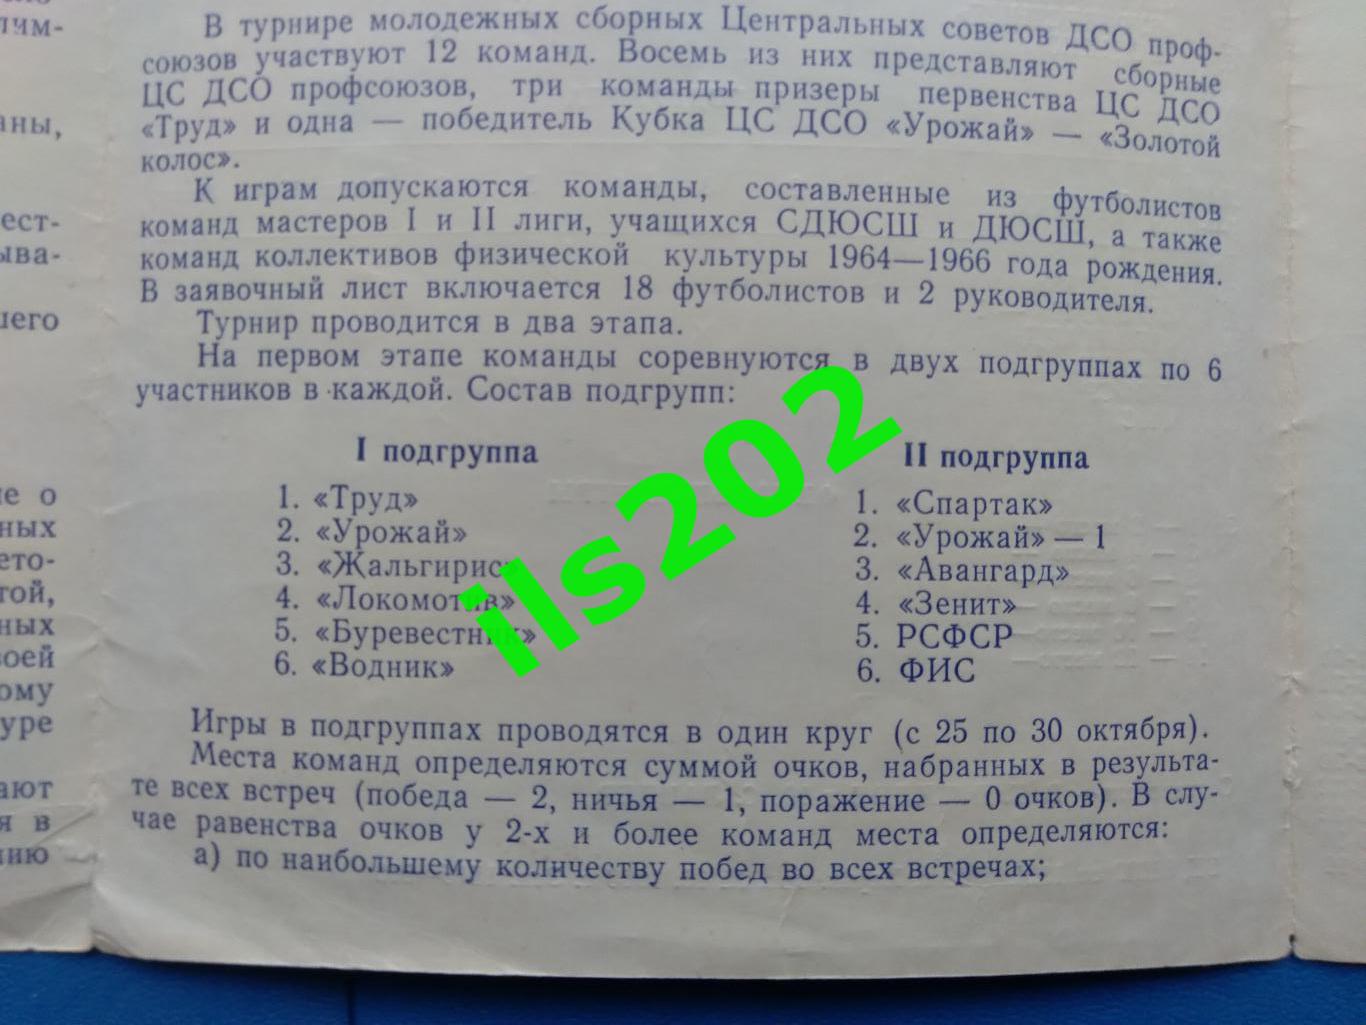 Харьков 1983 турнир подробности в описании 1